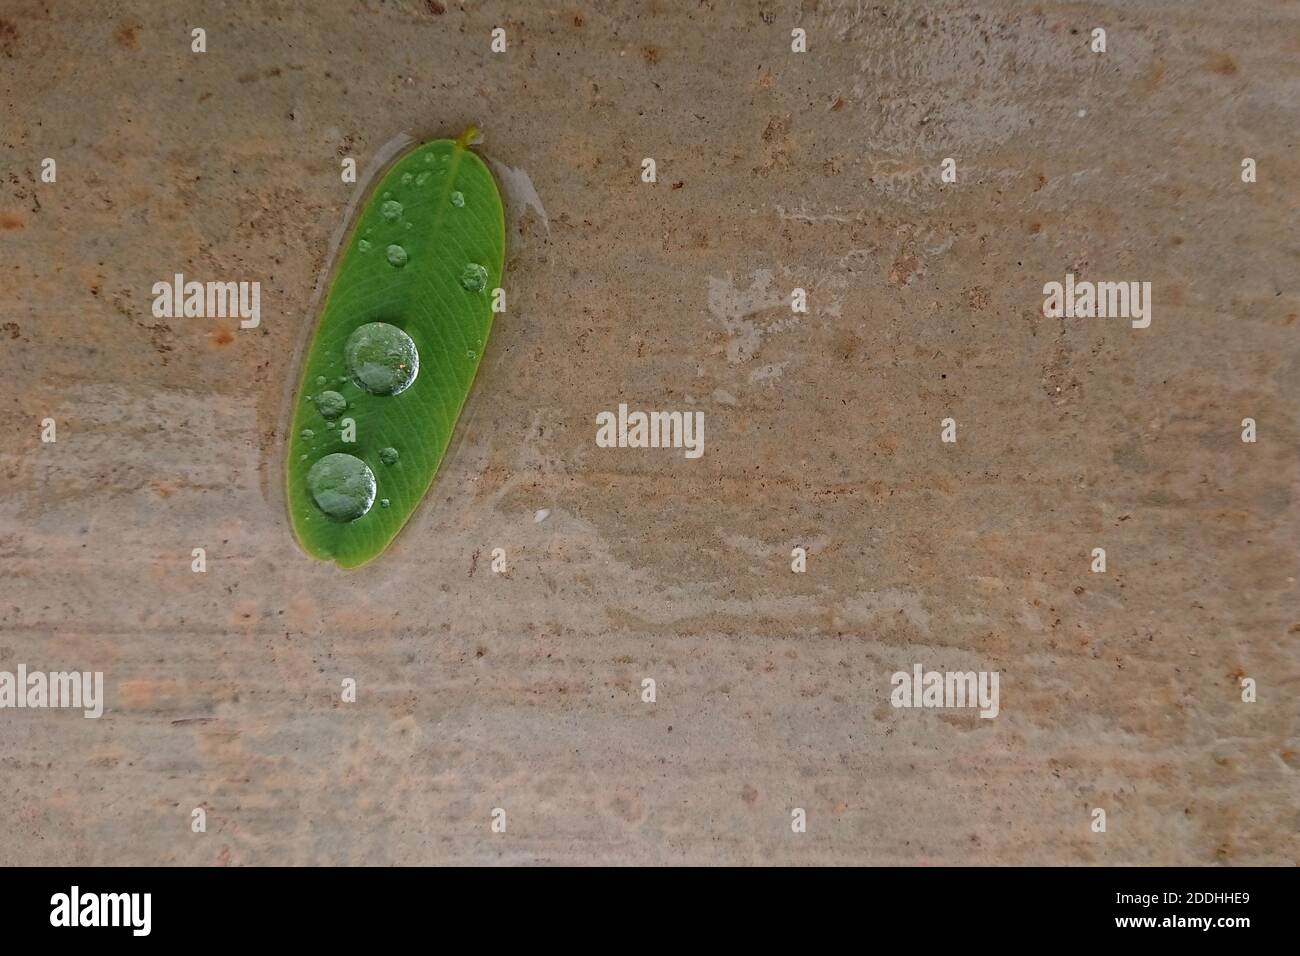 Vue de dessus d'une feuille verte avec gouttes de pluie au sol Banque D'Images